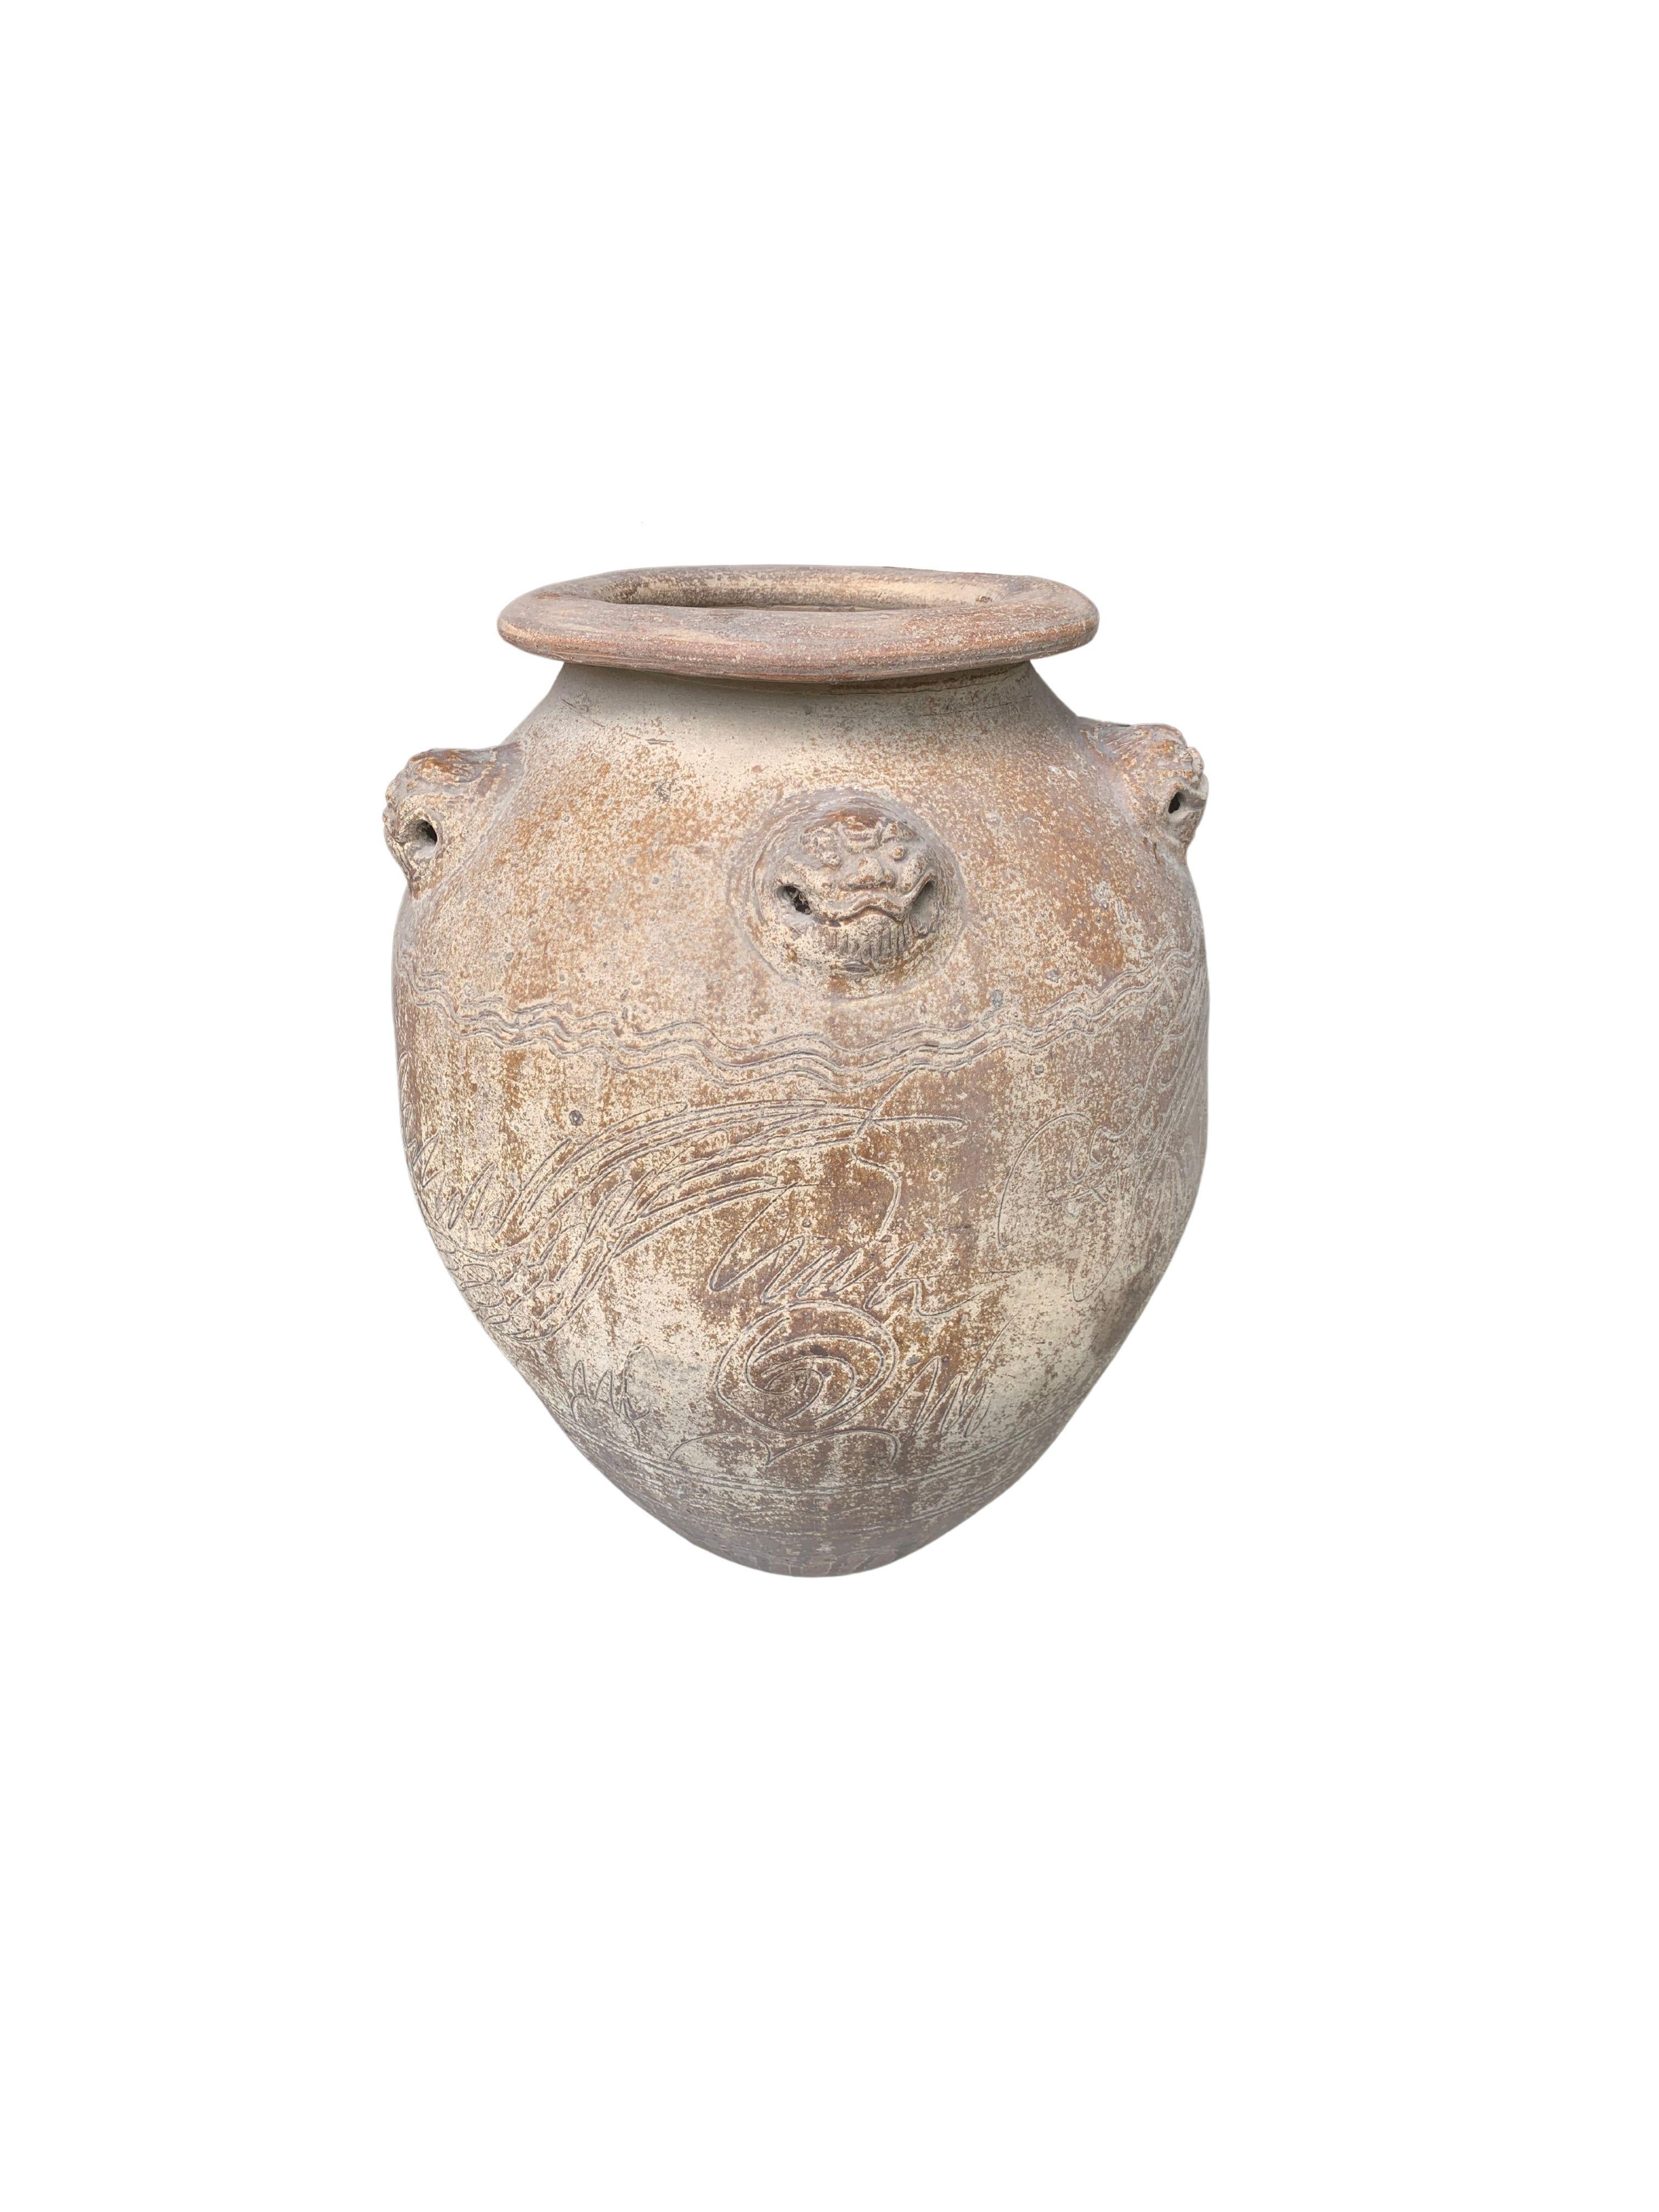 Dieses Krug ist ein wunderbares Beispiel chinesischer Keramik, mit einem Hinweis auf die Originalverglasung auf der Außenseite und Tigermedaillons und Gravuren. Heute eignet sich diese Schale hervorragend als dekorative Schale oder als Pflanzgefäß